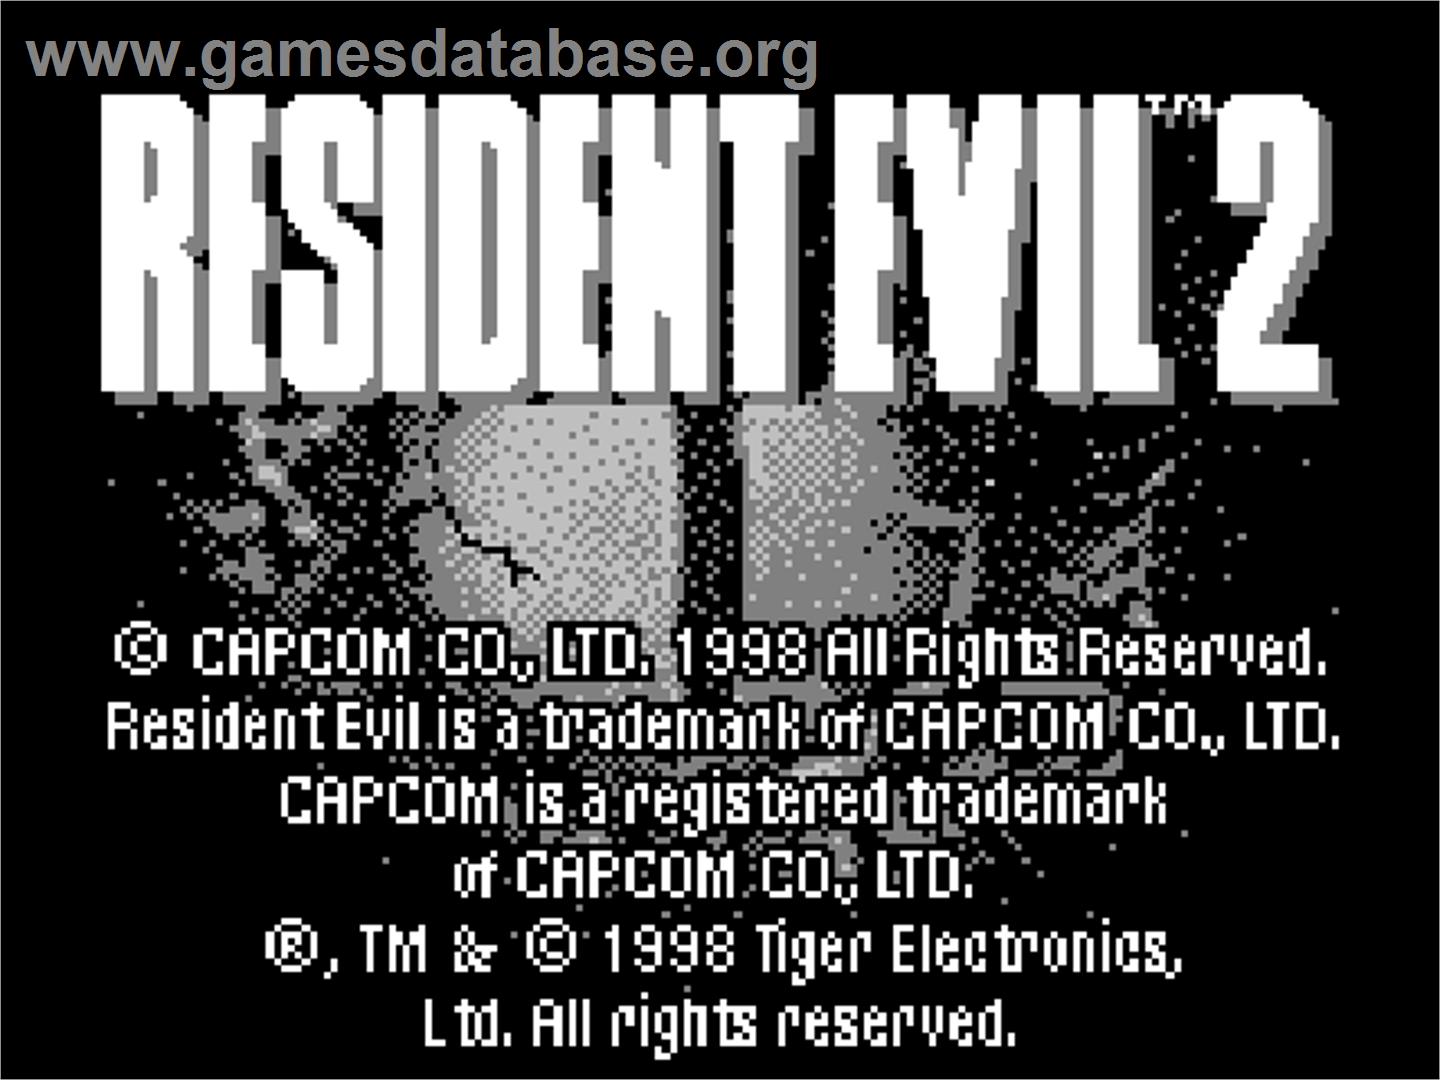 Resident Evil 2 - Tiger Game.com - Artwork - Title Screen